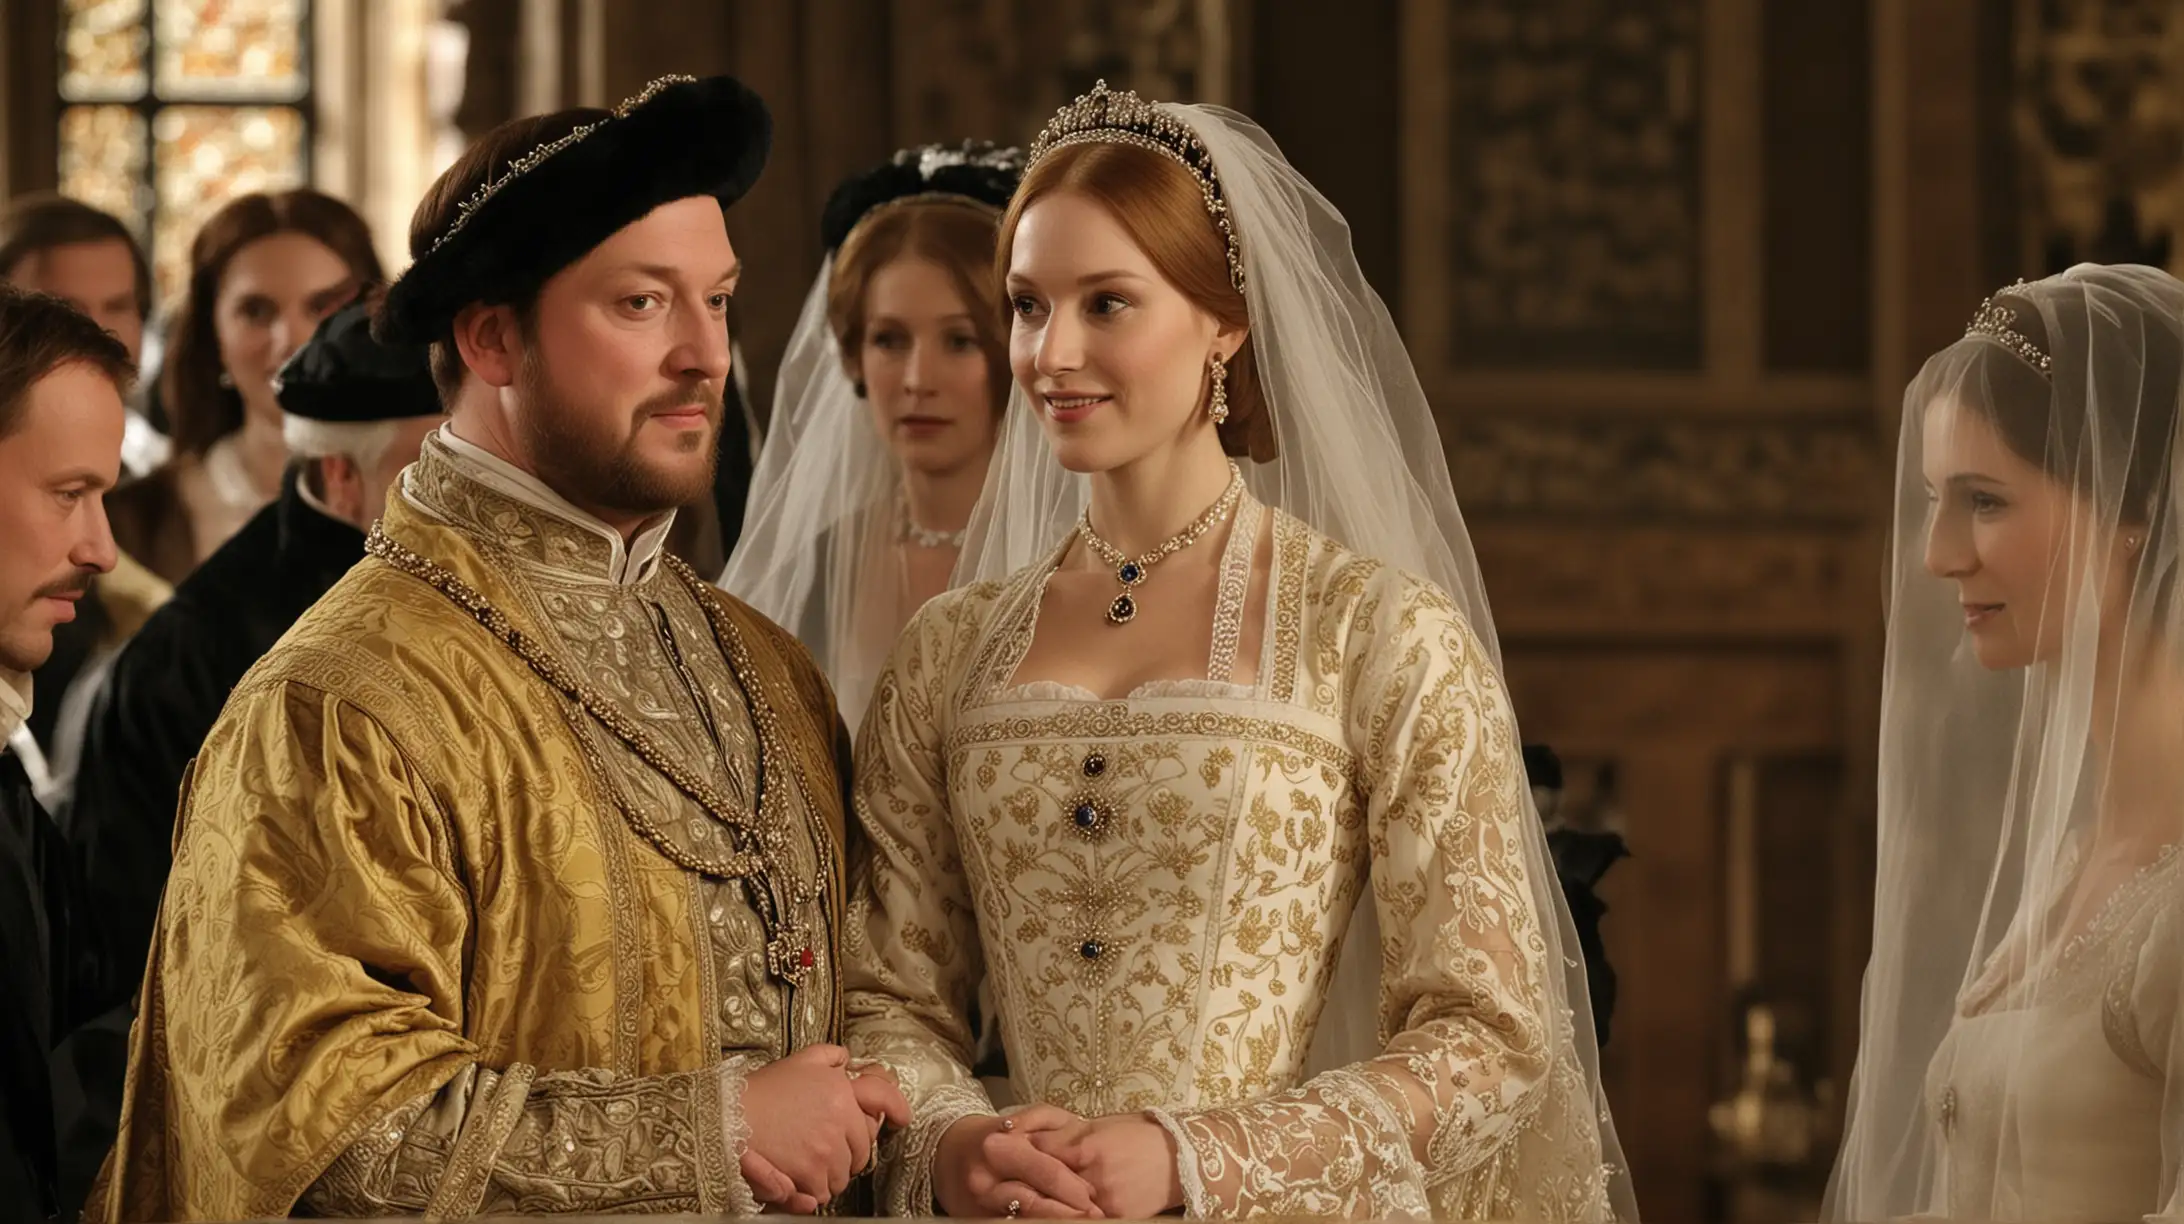 rey Enrique VIIIA LOS 45 años  de edad se casa con catalina howar quinta esposa de 18 años dé la dinastía tudor boda en la realeza